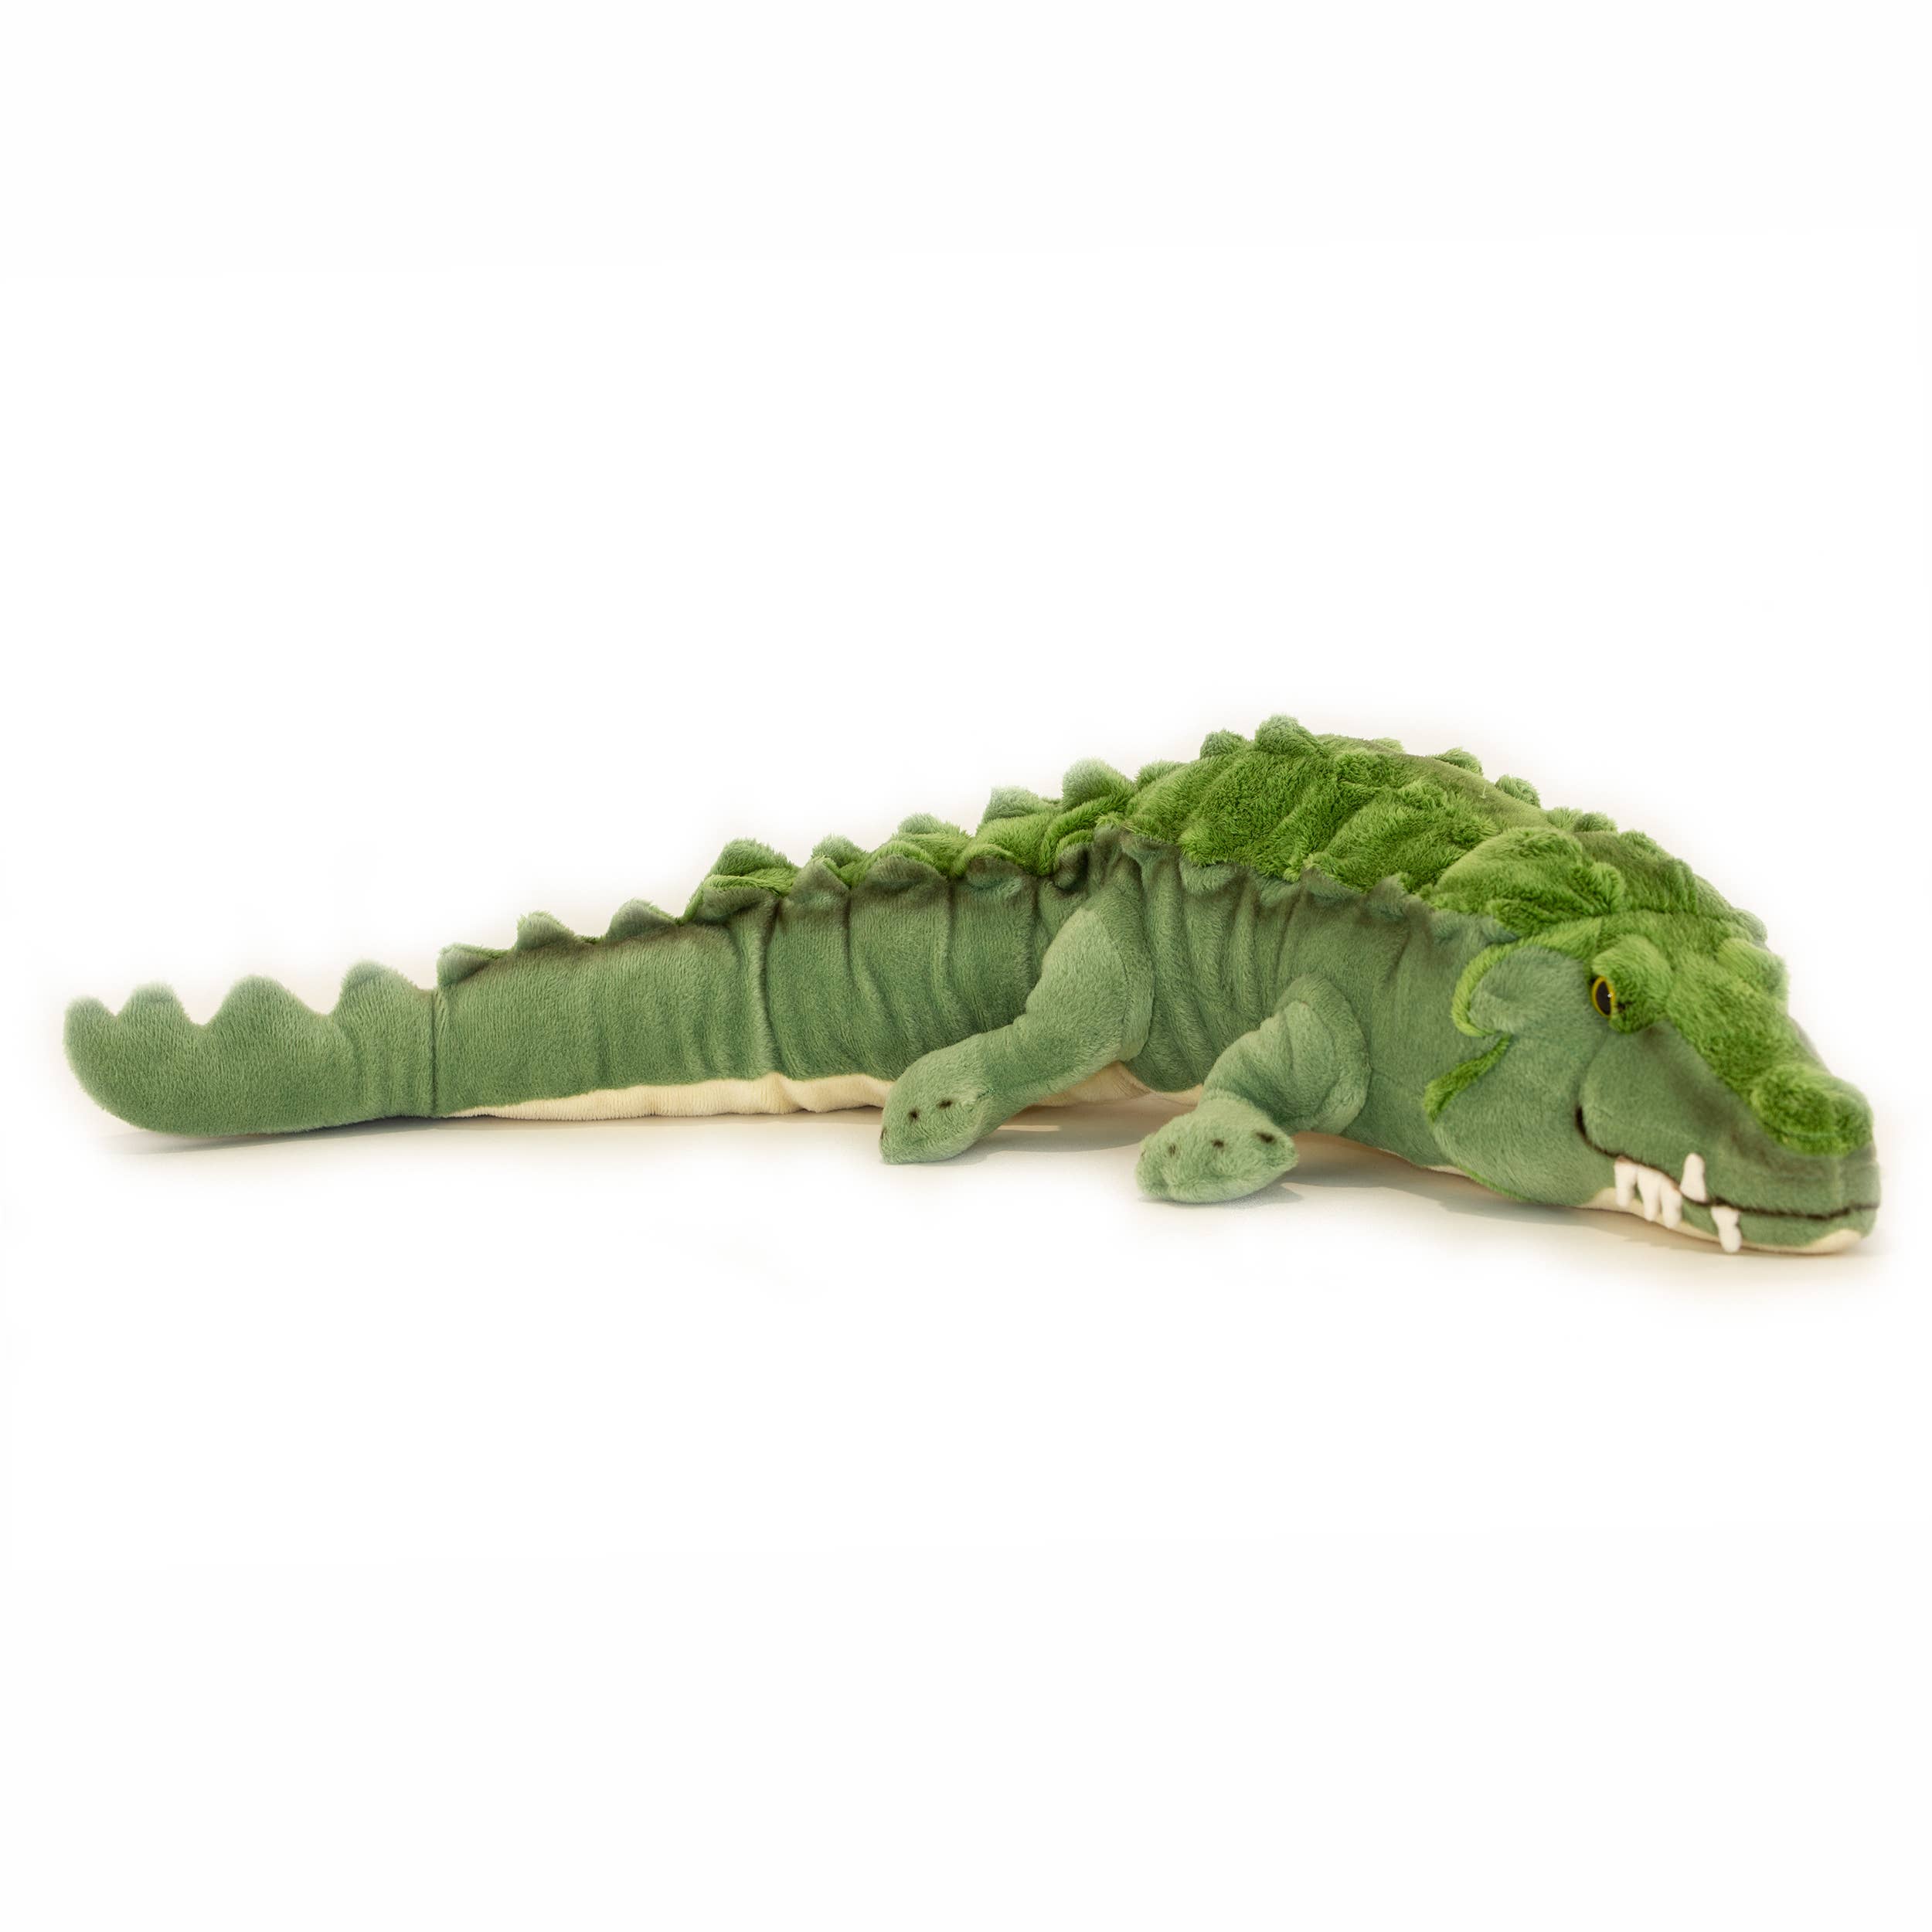 Green Alligator Lifelike Large Size 80cm/31.5"